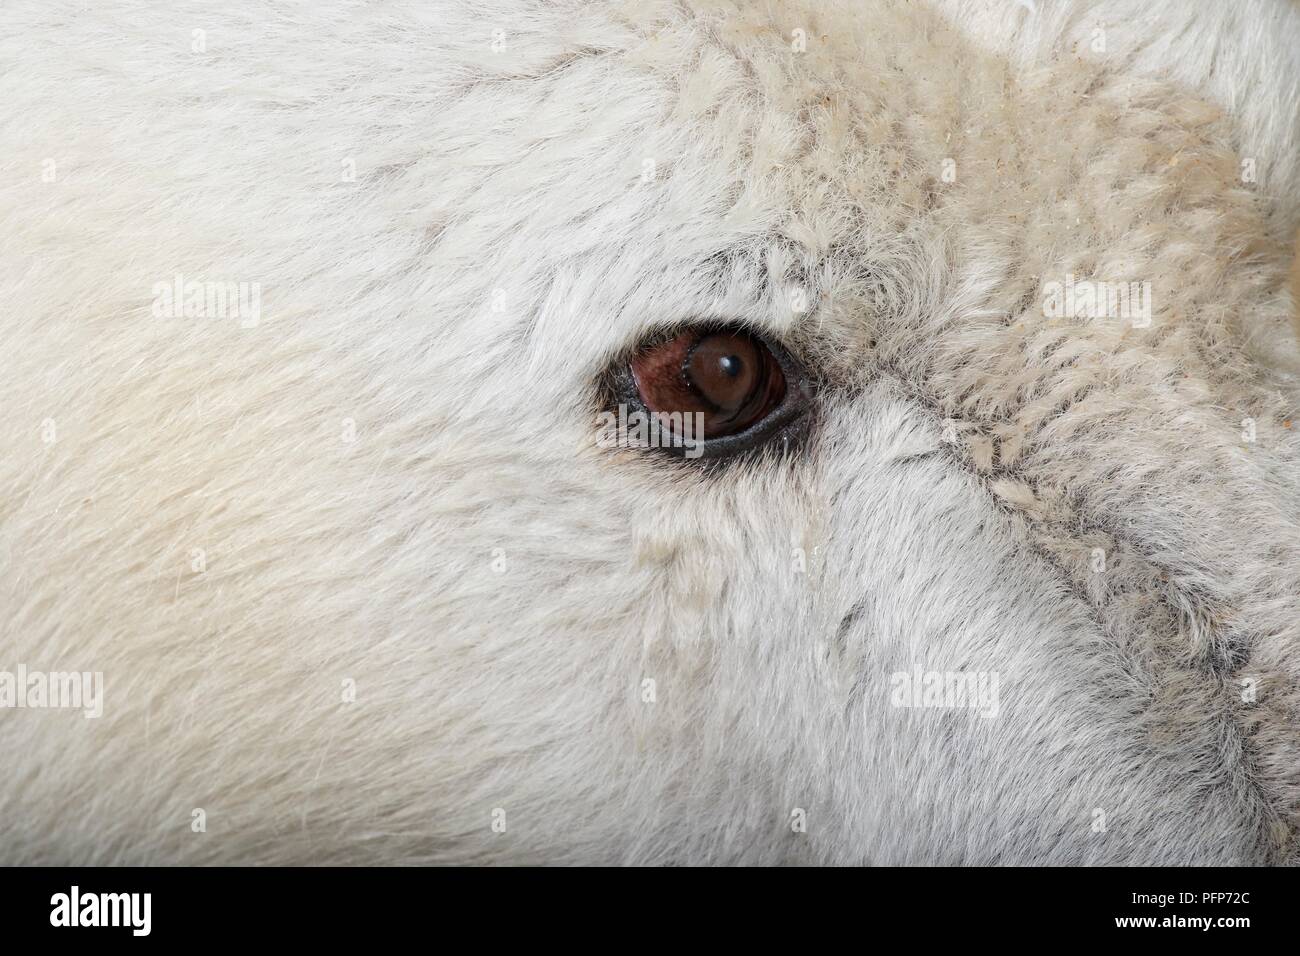 Orso polare (Ursus maritimus), close-up in eye Foto Stock